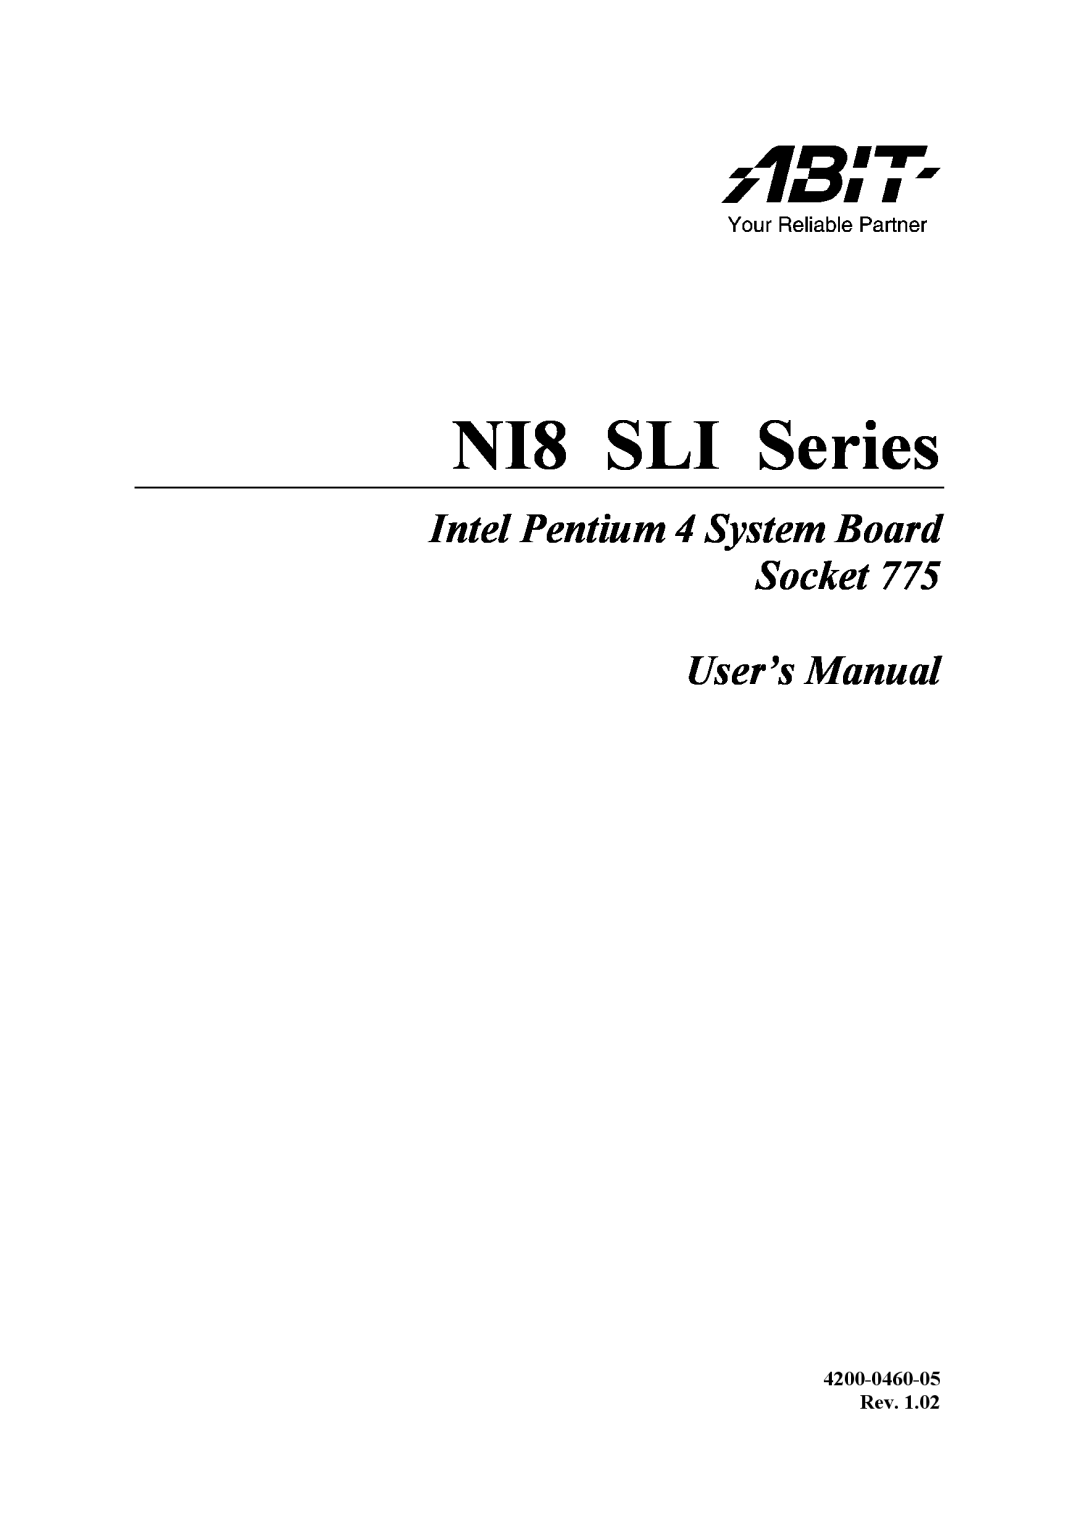 Abit user manual NI8 SLI Series, Intel Pentium 4 System Board Socket User’s Manual, 4200-0460-05 Rev 